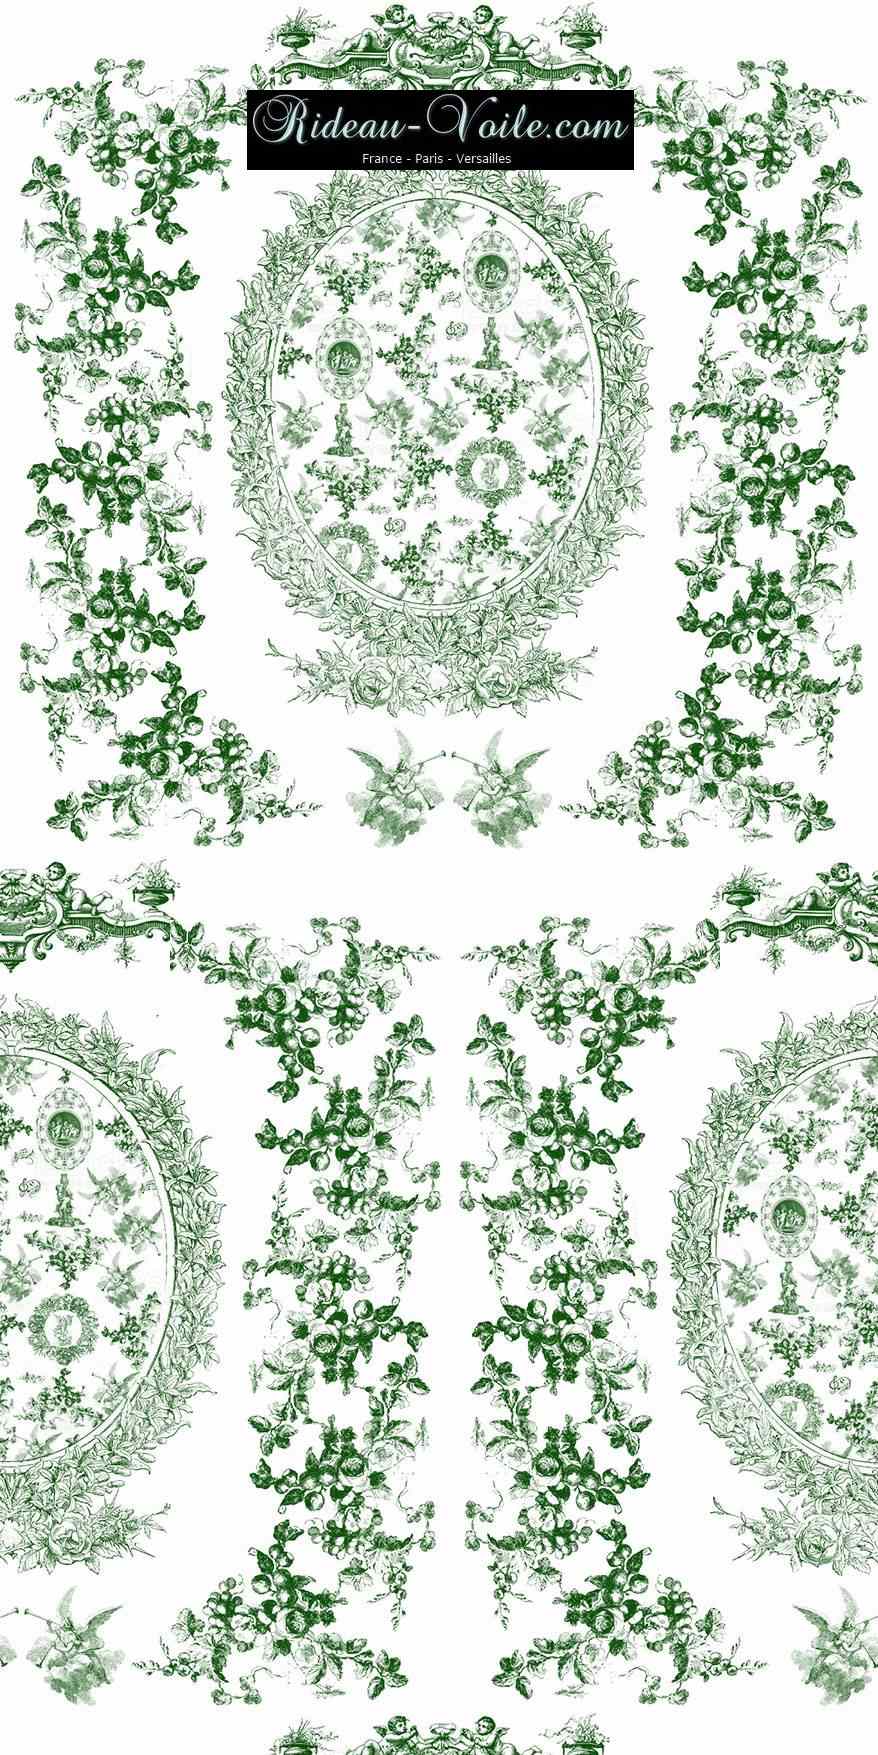 green vert toile de jouy au mètre tissu Toile ameublement tapisserie textile agencement Paris Versailles haut de gamme french fabric meter tapestry upholstery home pattern  style Empire Yvelines motif imprimé